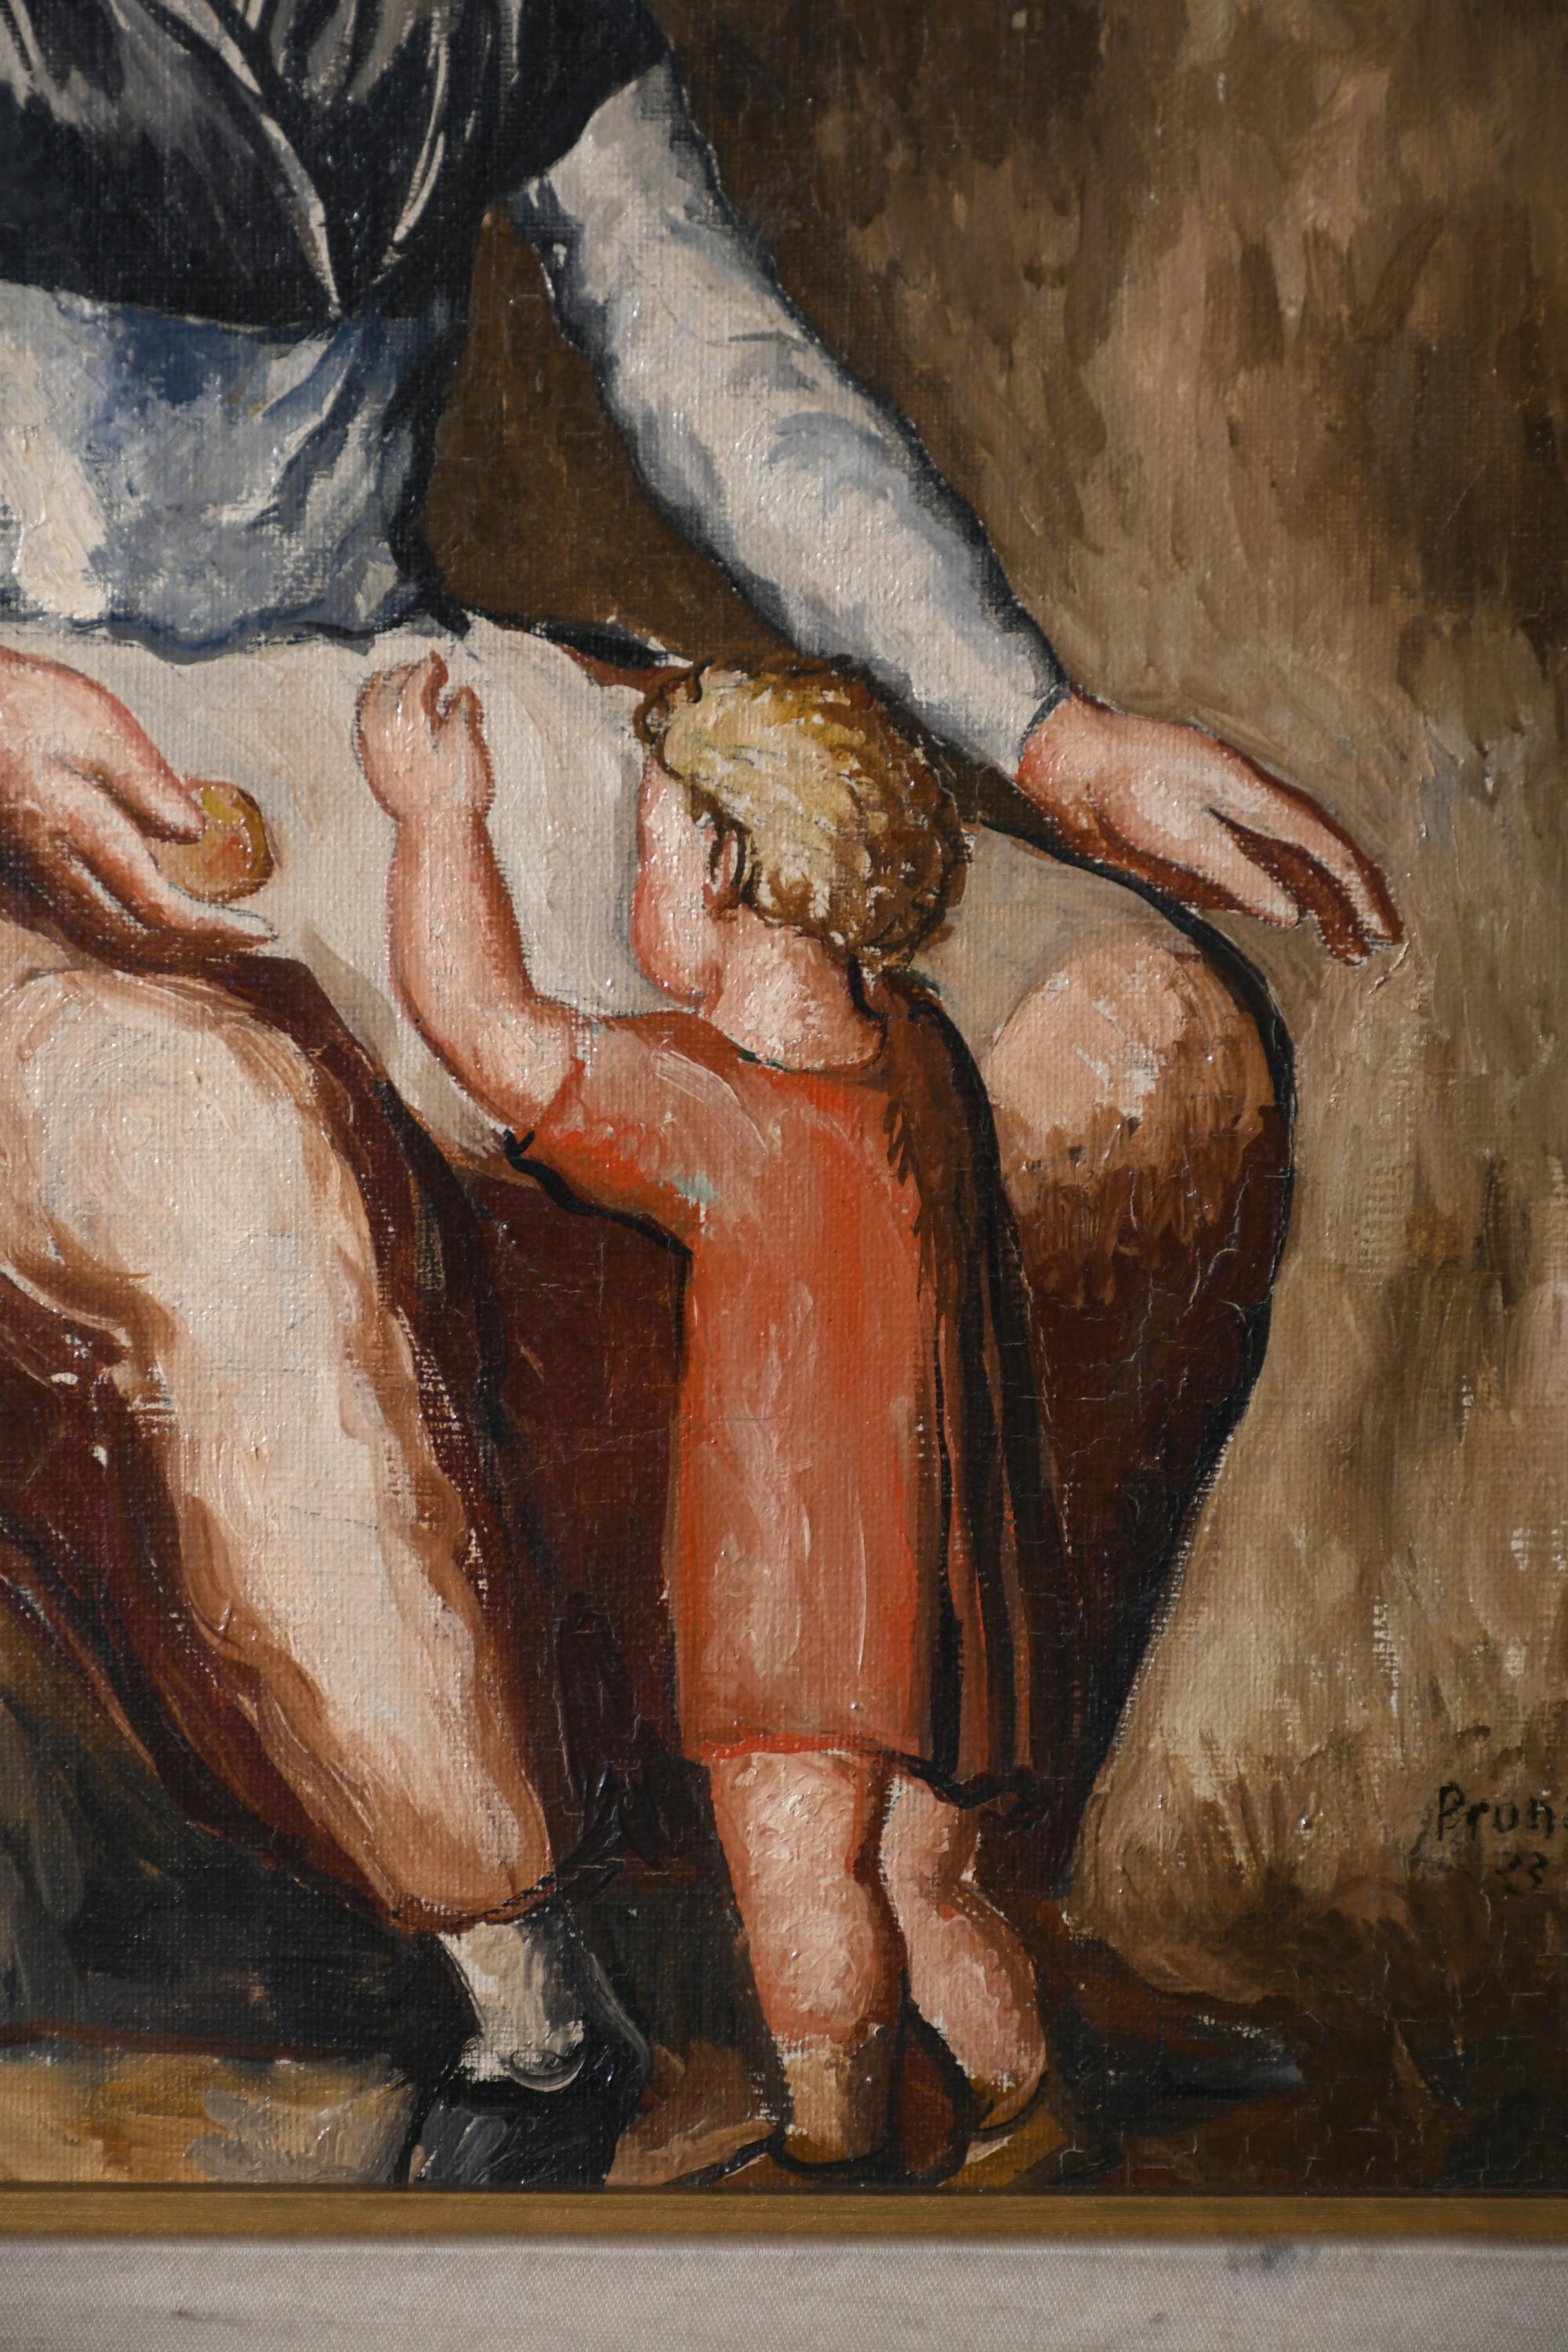 PERE PRUNA OCERANS (1904-1977). "JOVEN CON NIÑO", 1933.